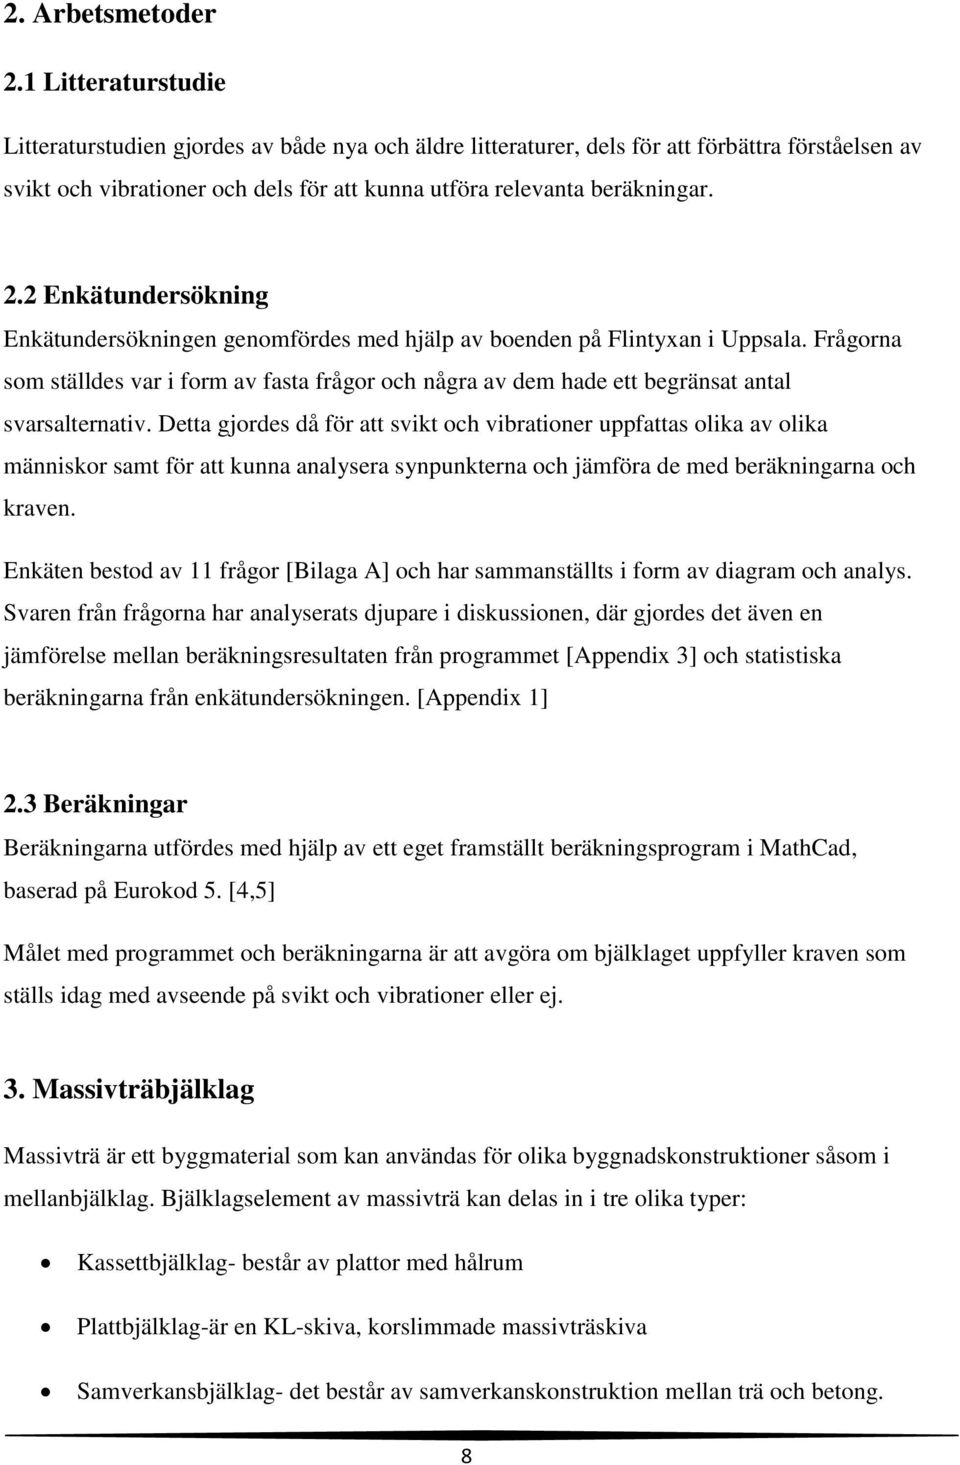 2 Enkätundersökning Enkätundersökningen genomfördes med hjälp av boenden på Flintyxan i Uppsala.